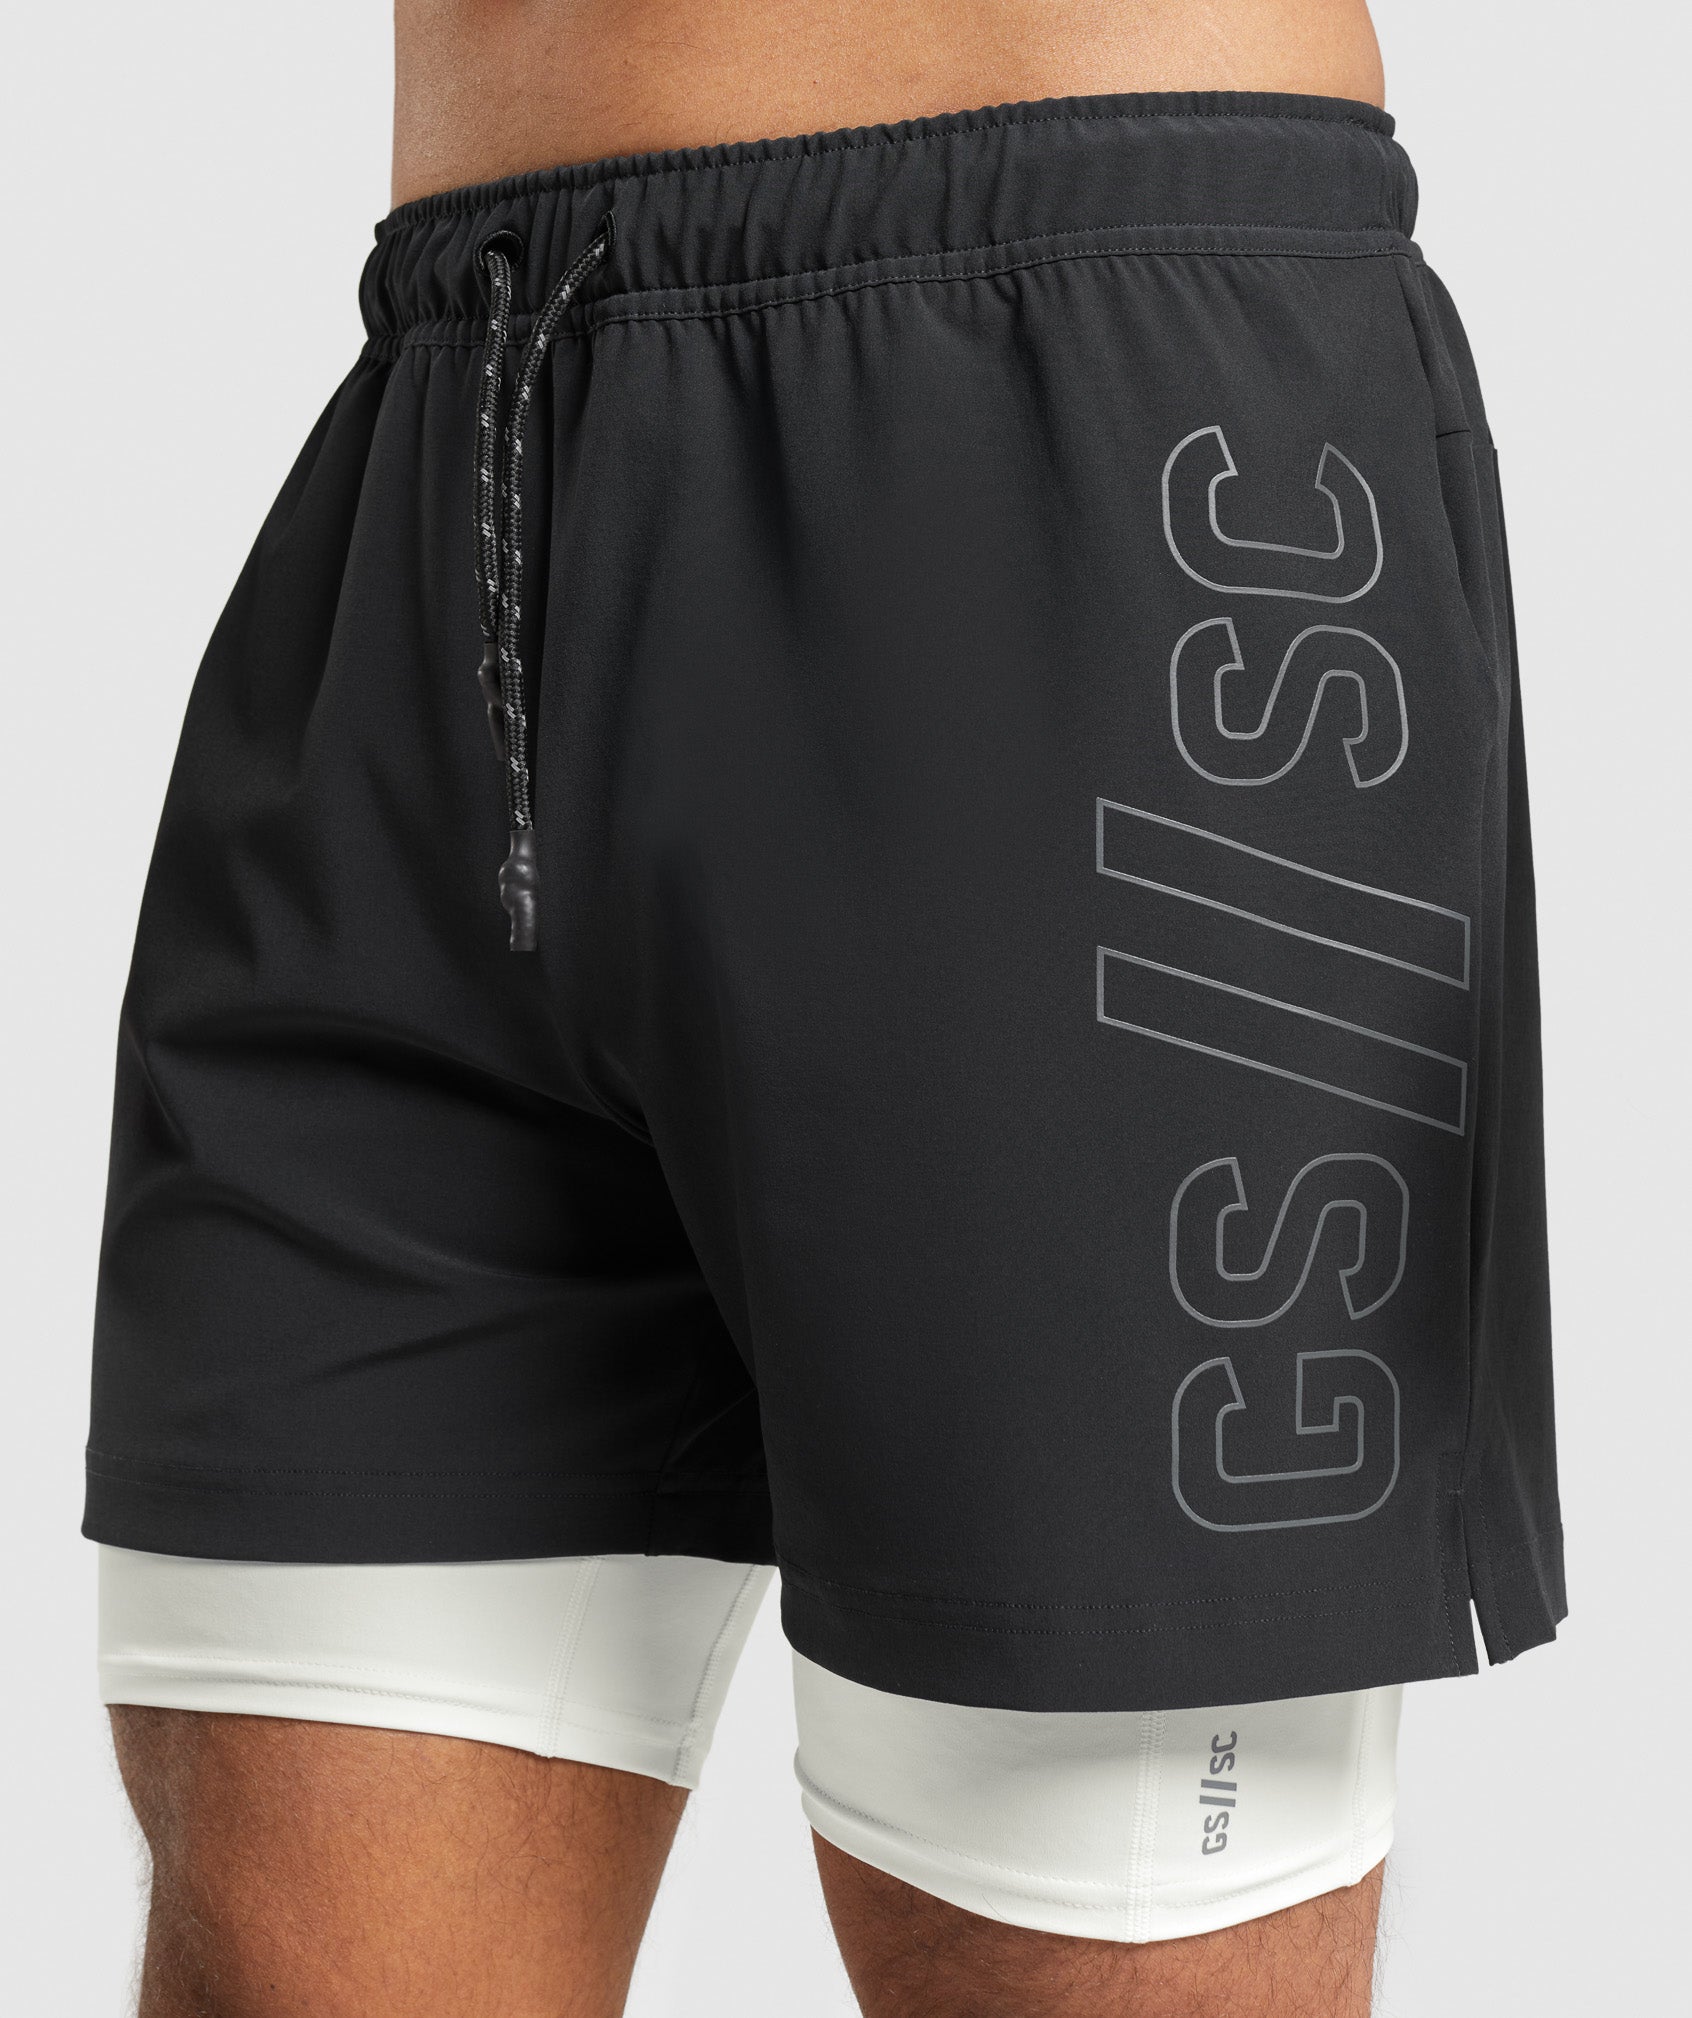 Gymshark//Steve Cook Ranger Shorts in Black - view 8